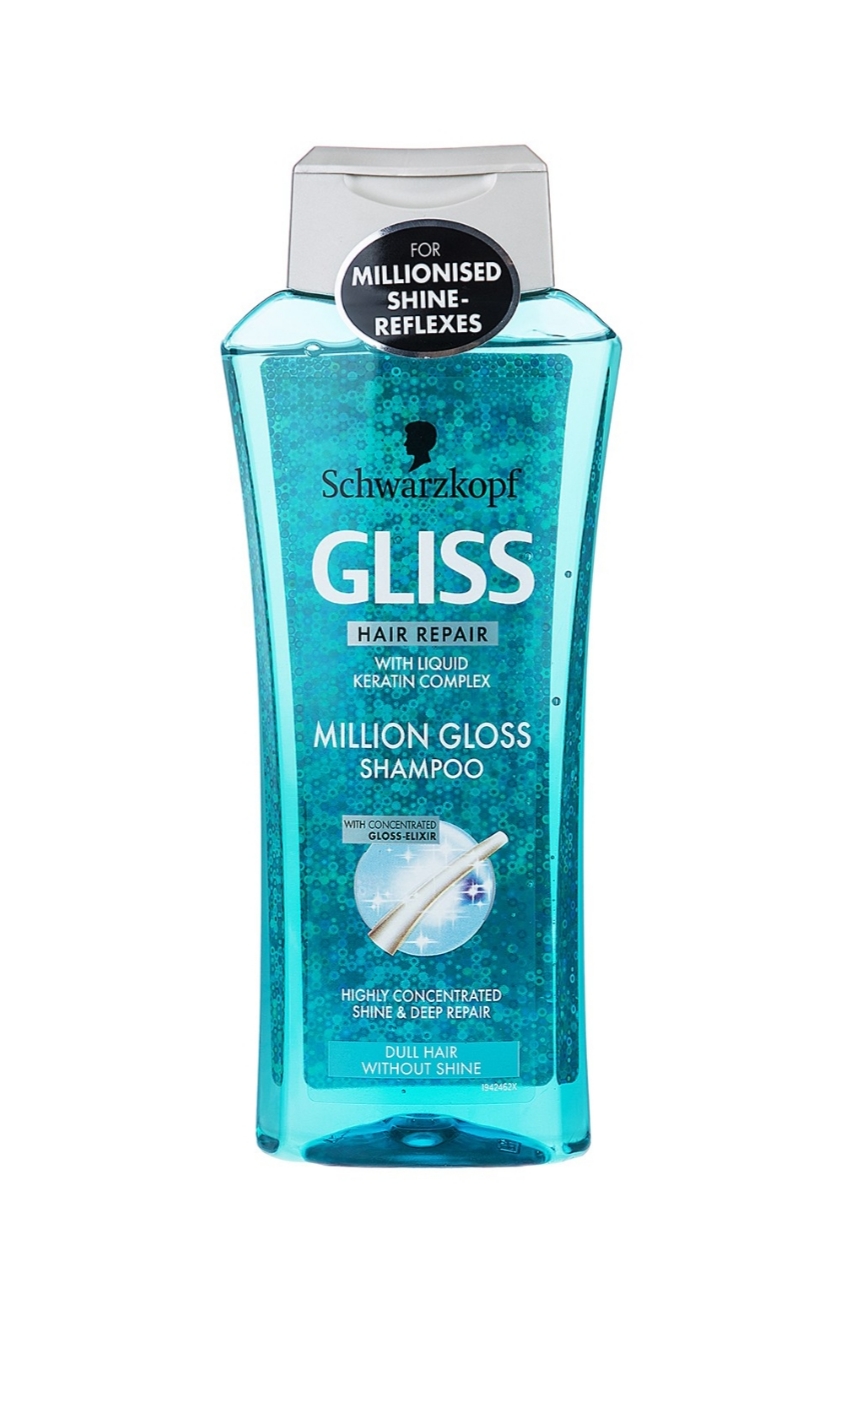 فراورده های حالت دهنده ،نرم کننده وتثبیت کننده آرایش مو (کرمها ، لوسیونها وروغنها) GLISS Million gloss conditionerPACKAGING 1